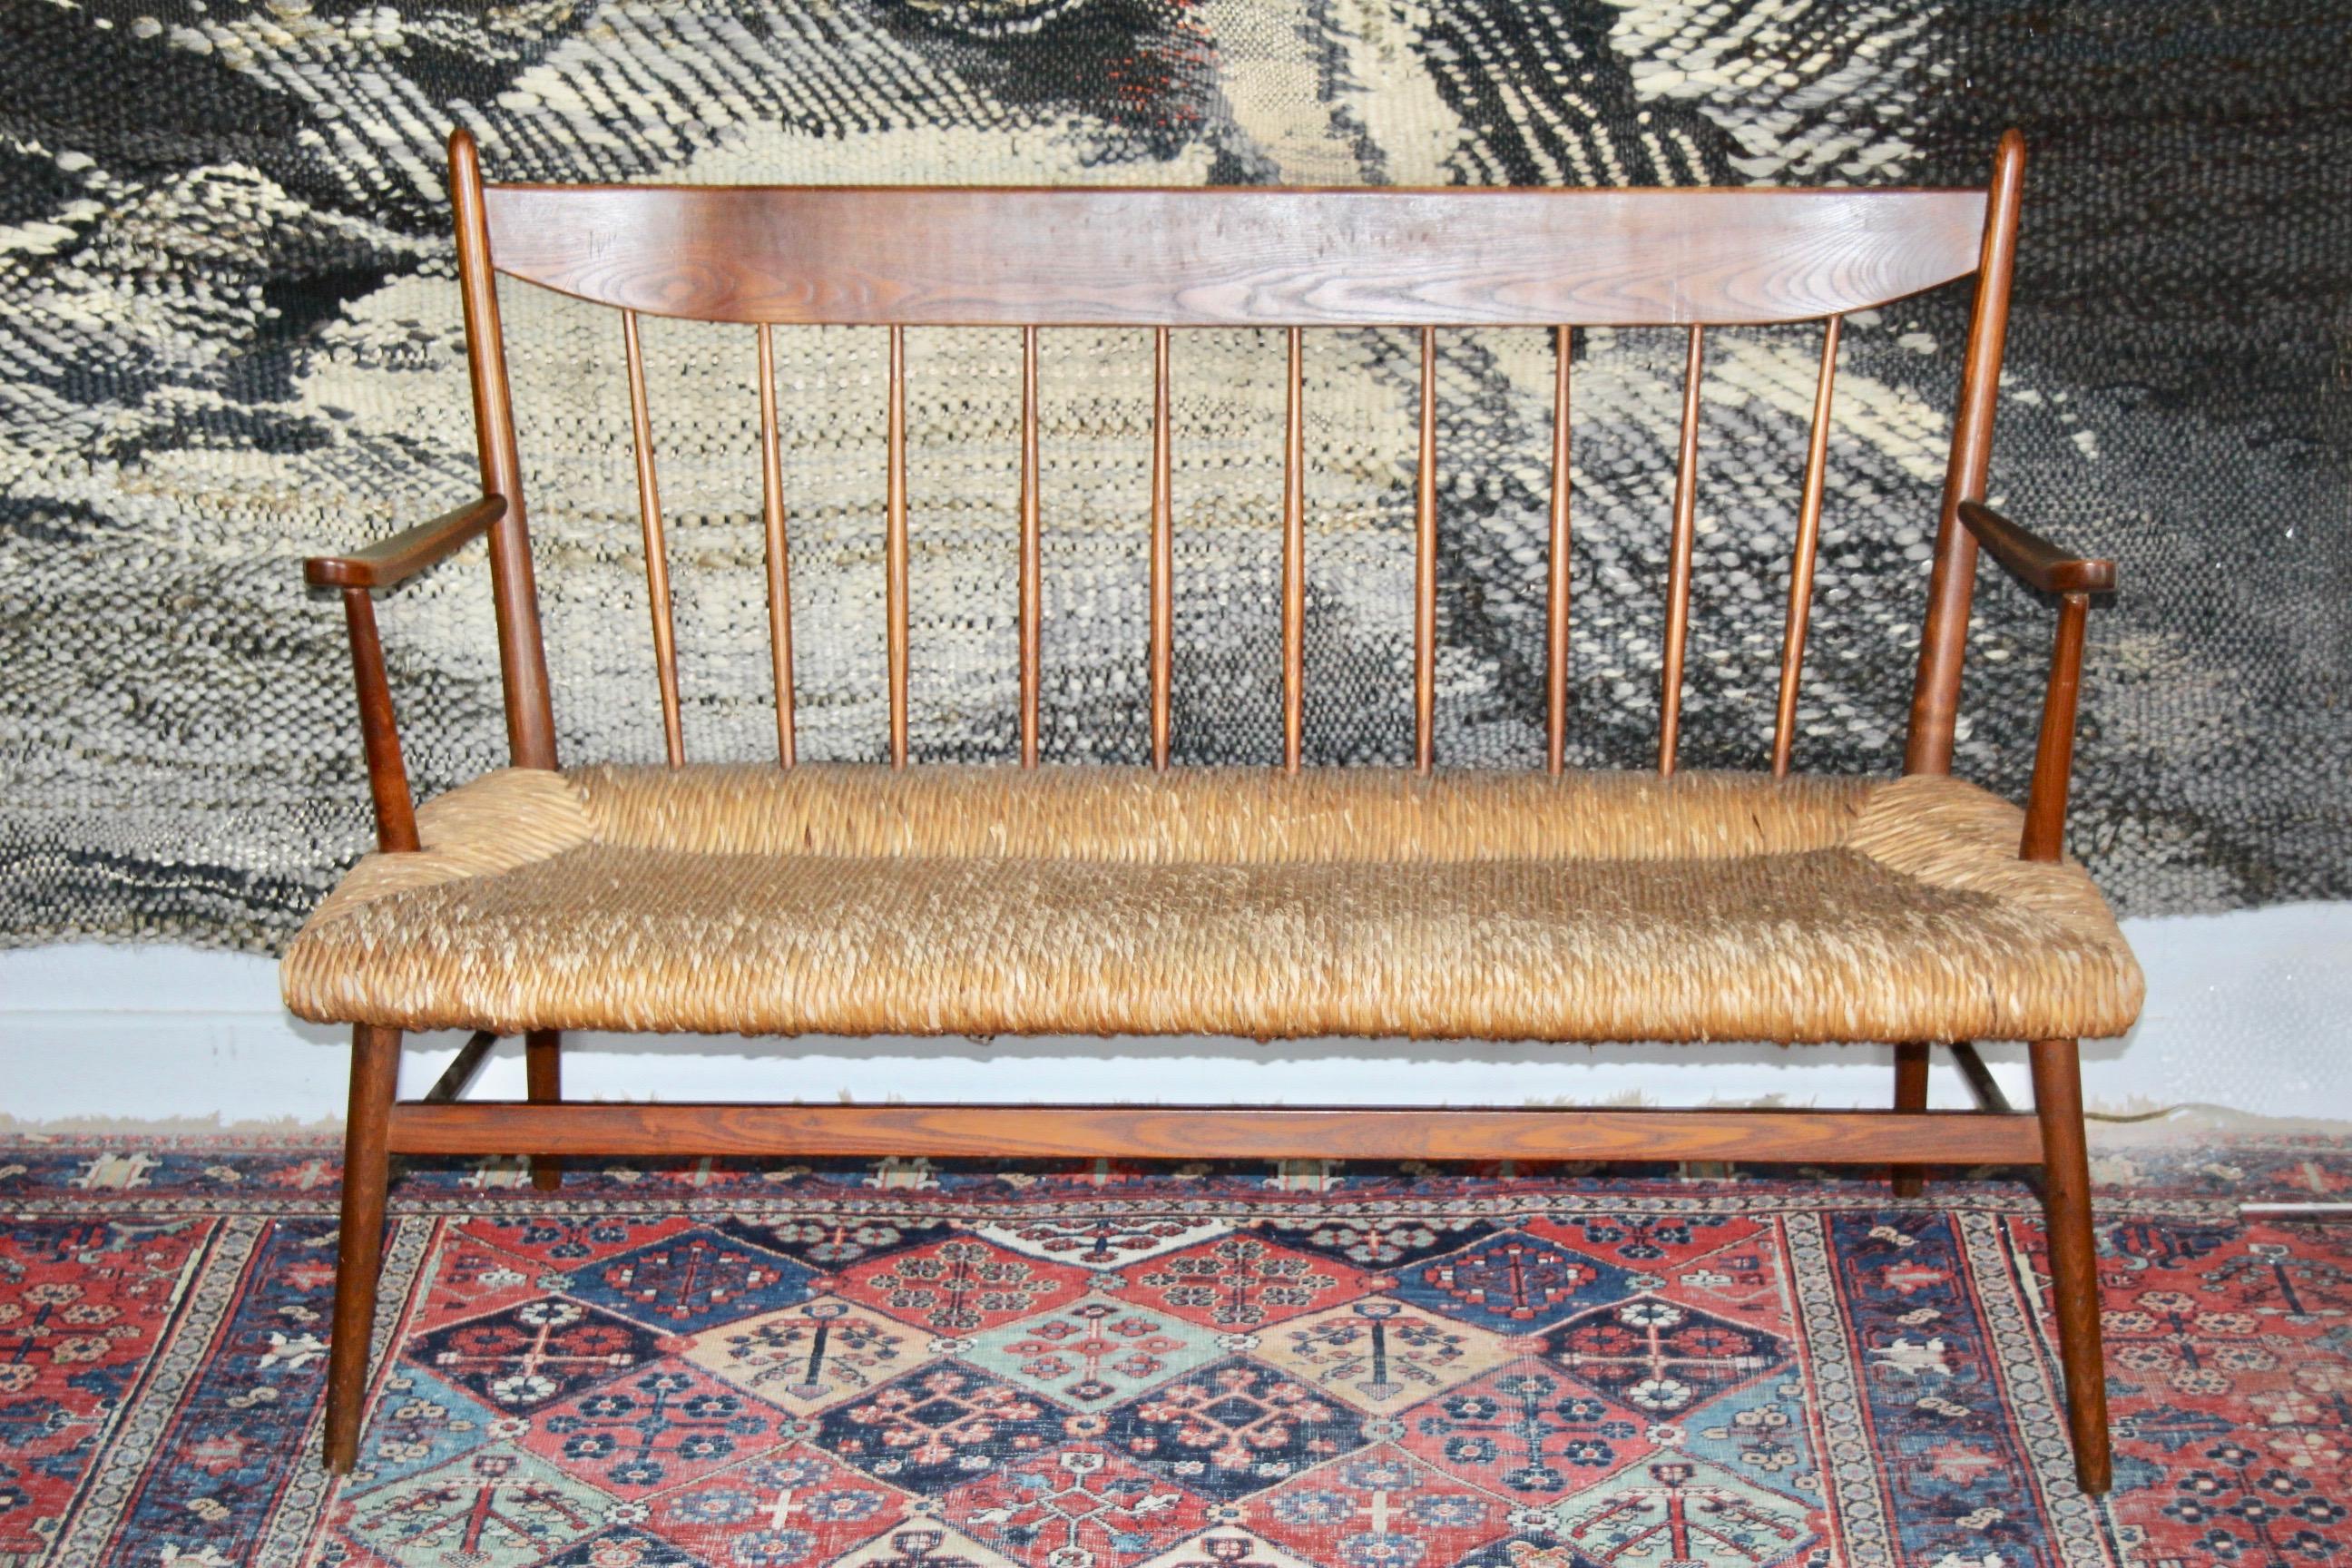 Sofa aus Stroh und Holz im skandinavischen Stil. Kann zwei, wenn nicht sogar drei Personen aufnehmen. Solides und gut ausgeführtes Strohgeflecht.